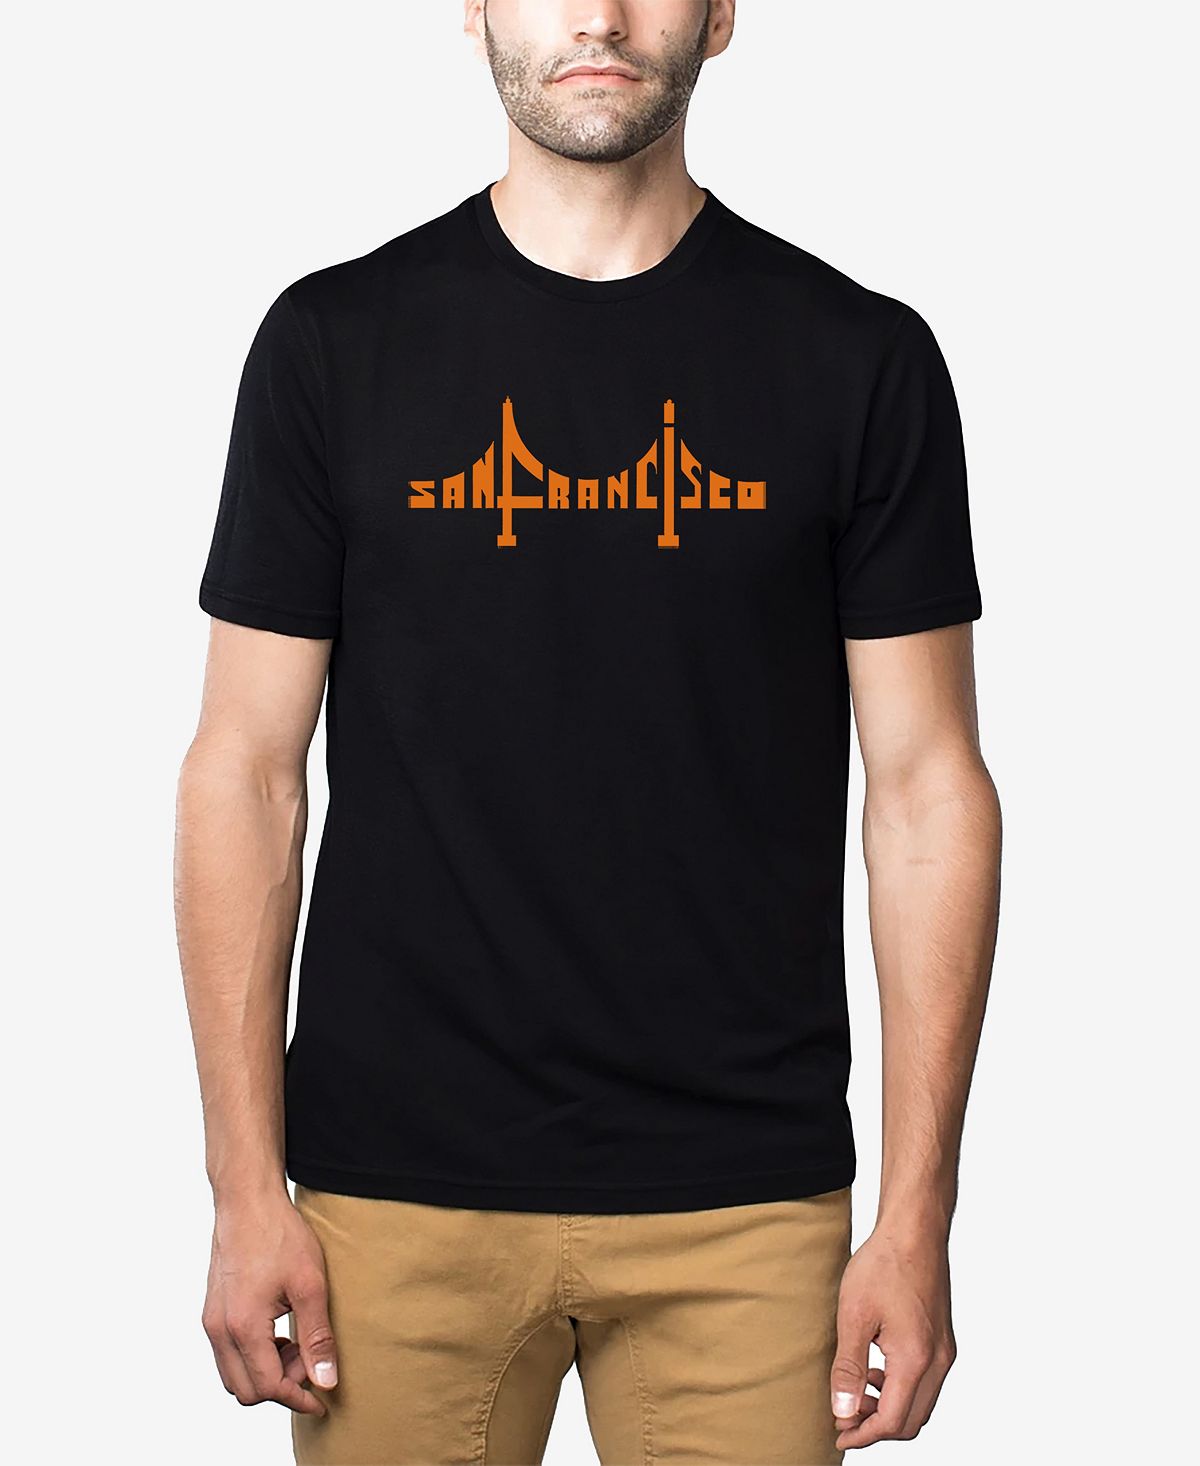 Мужская футболка премиум-класса word art с изображением моста сан-франциско LA Pop Art, черный сан франциско